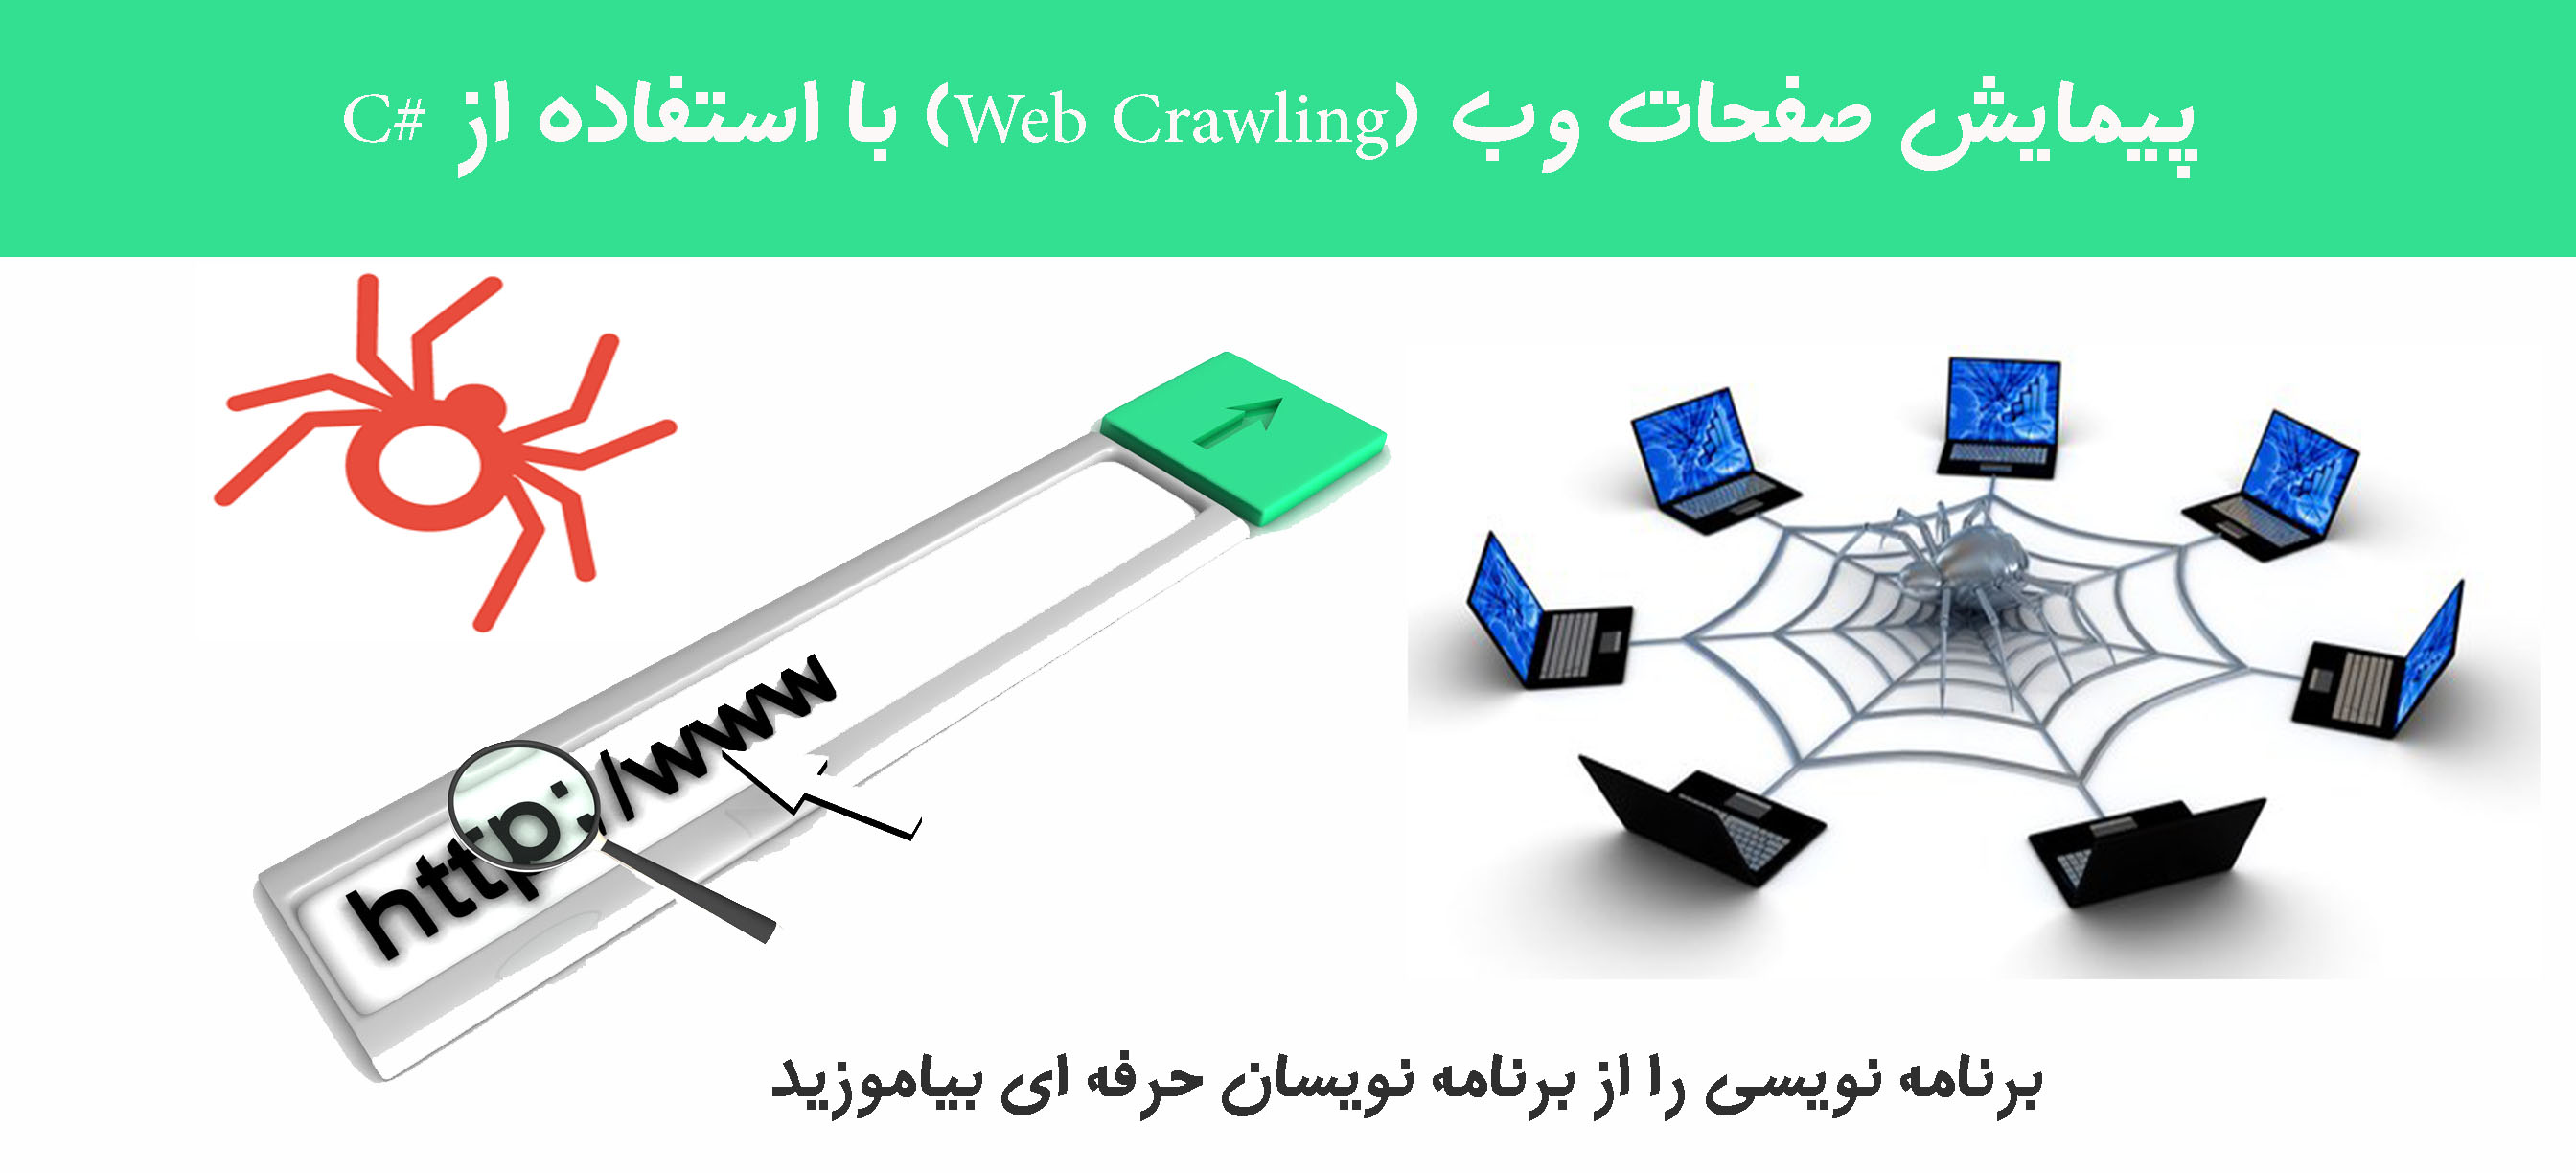 پیمایش صفحات وب (Web Crawling) با استفاده از #C